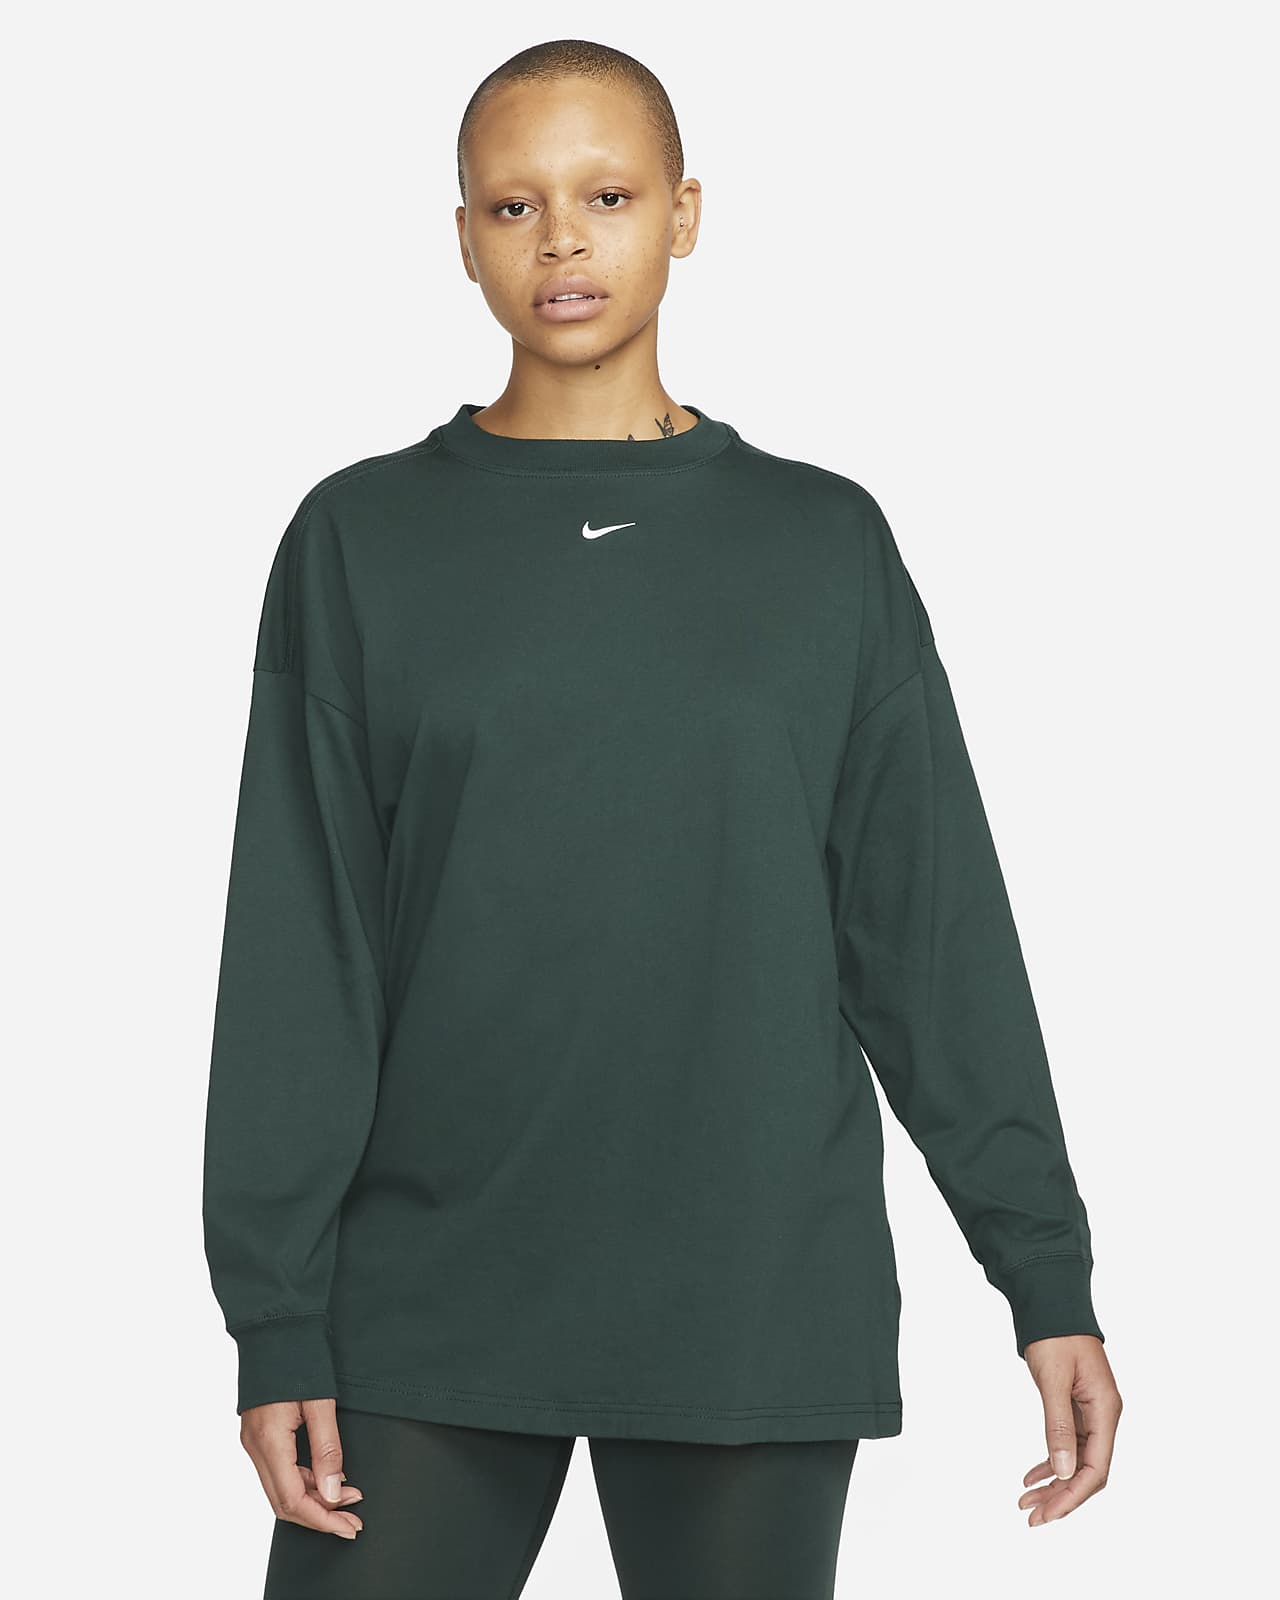 Nike Sportswear Essentials Women's Long-Sleeve Top.